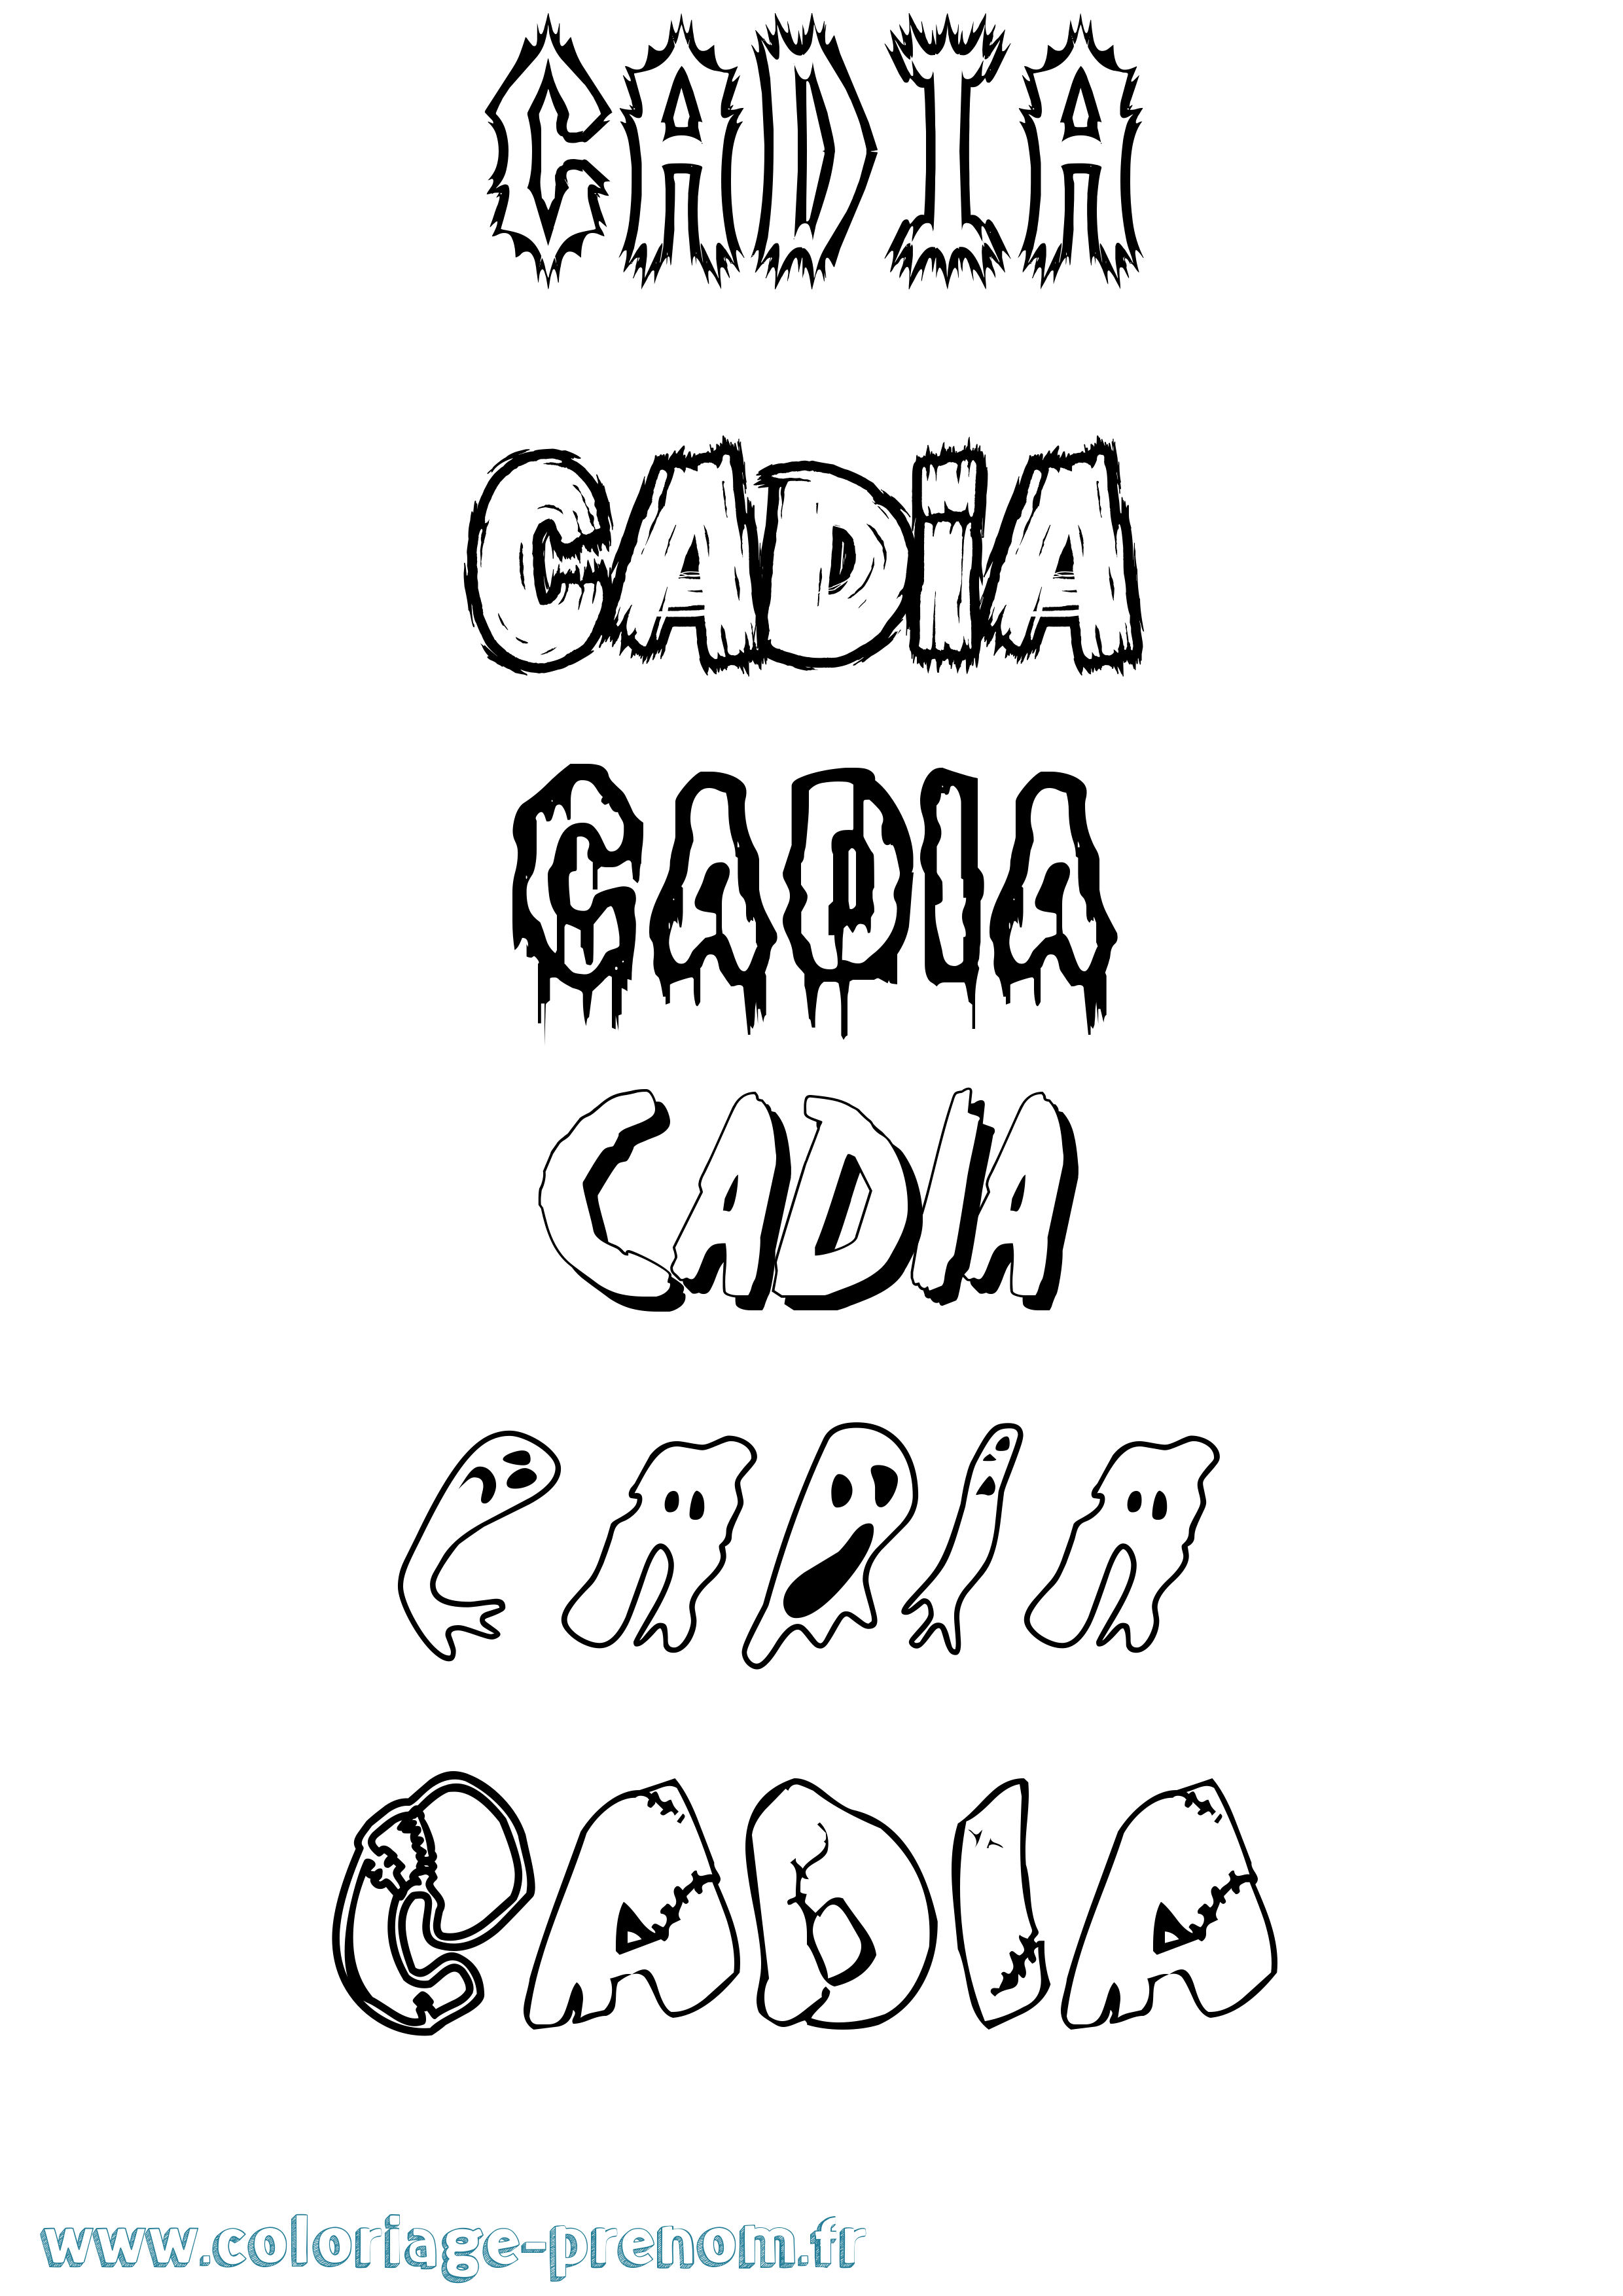 Coloriage prénom Cadia Frisson